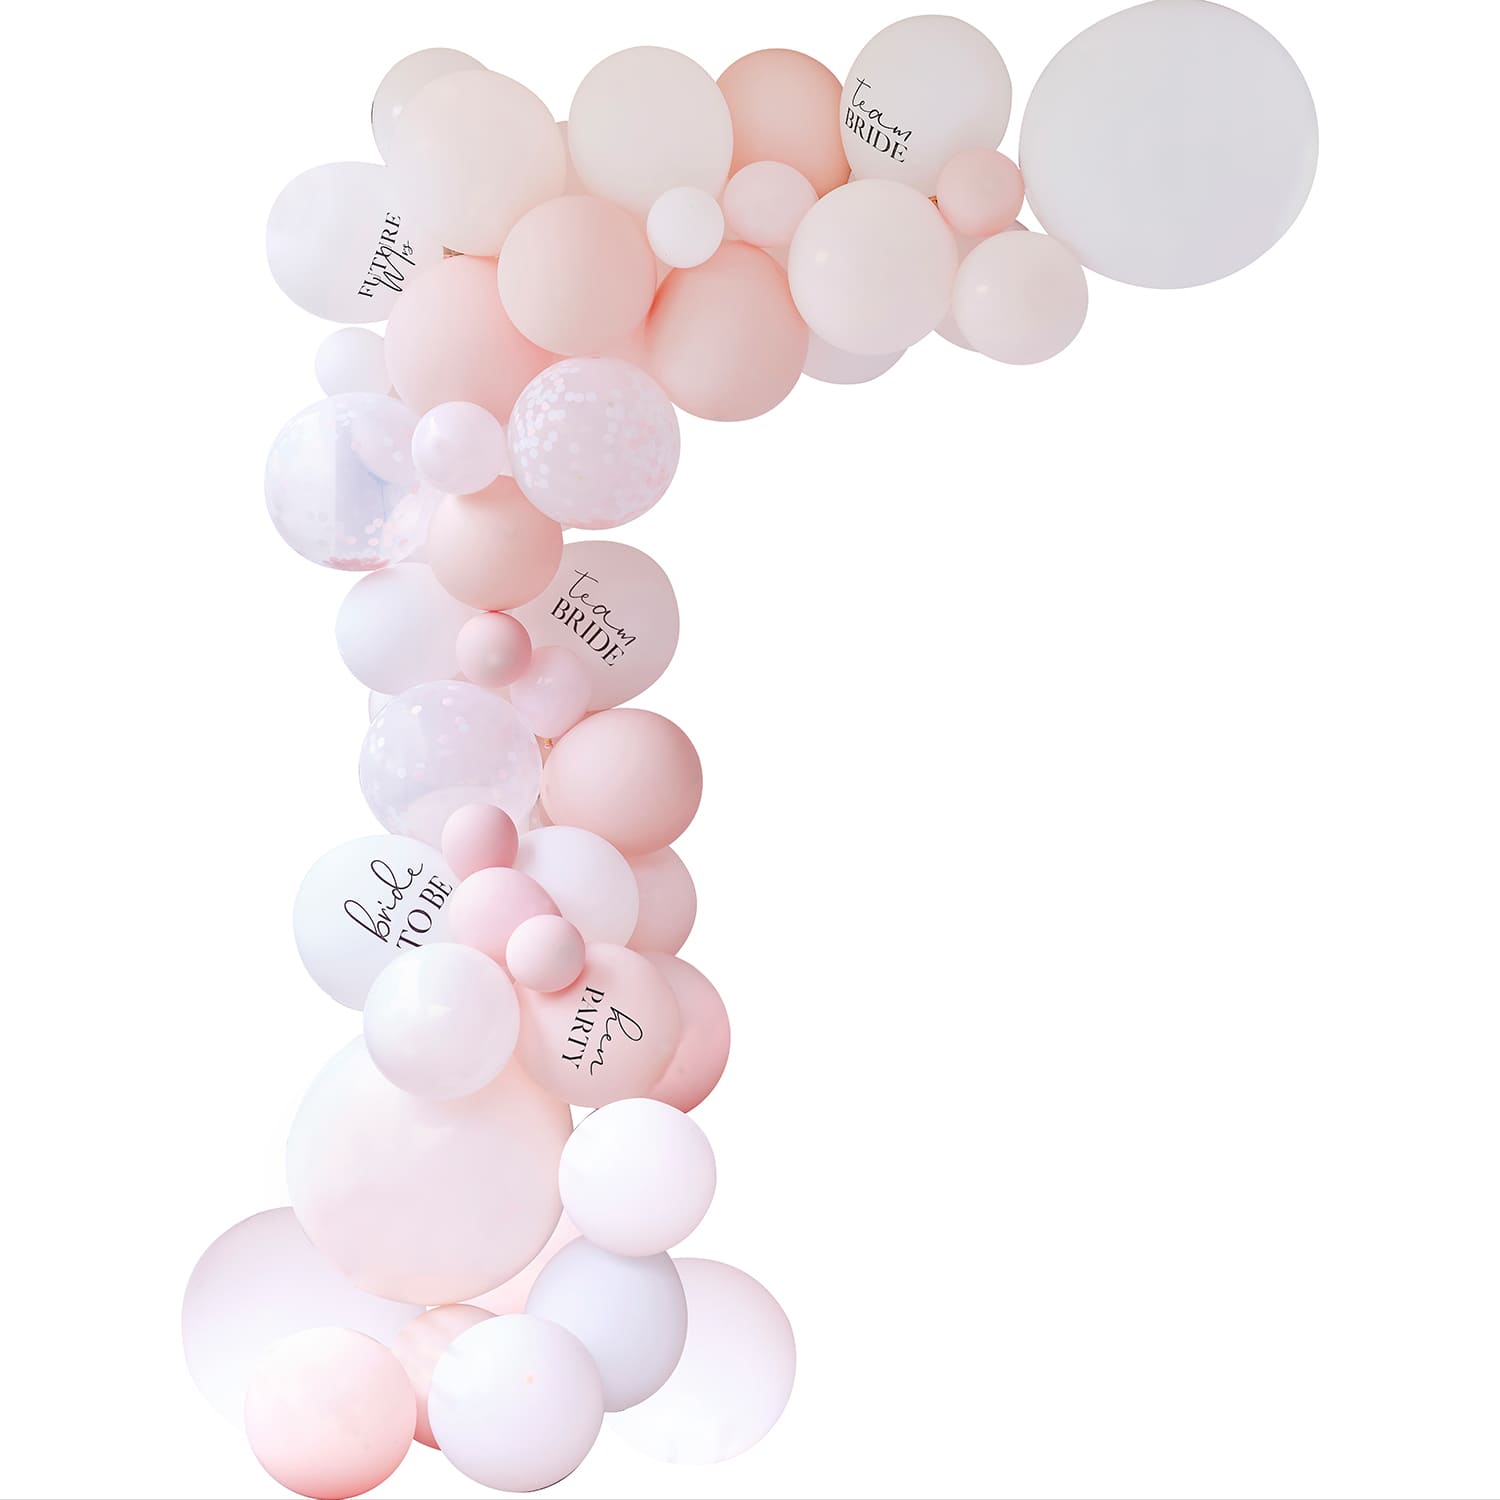 Arche de ballons rose pastel & blanche pour evjf